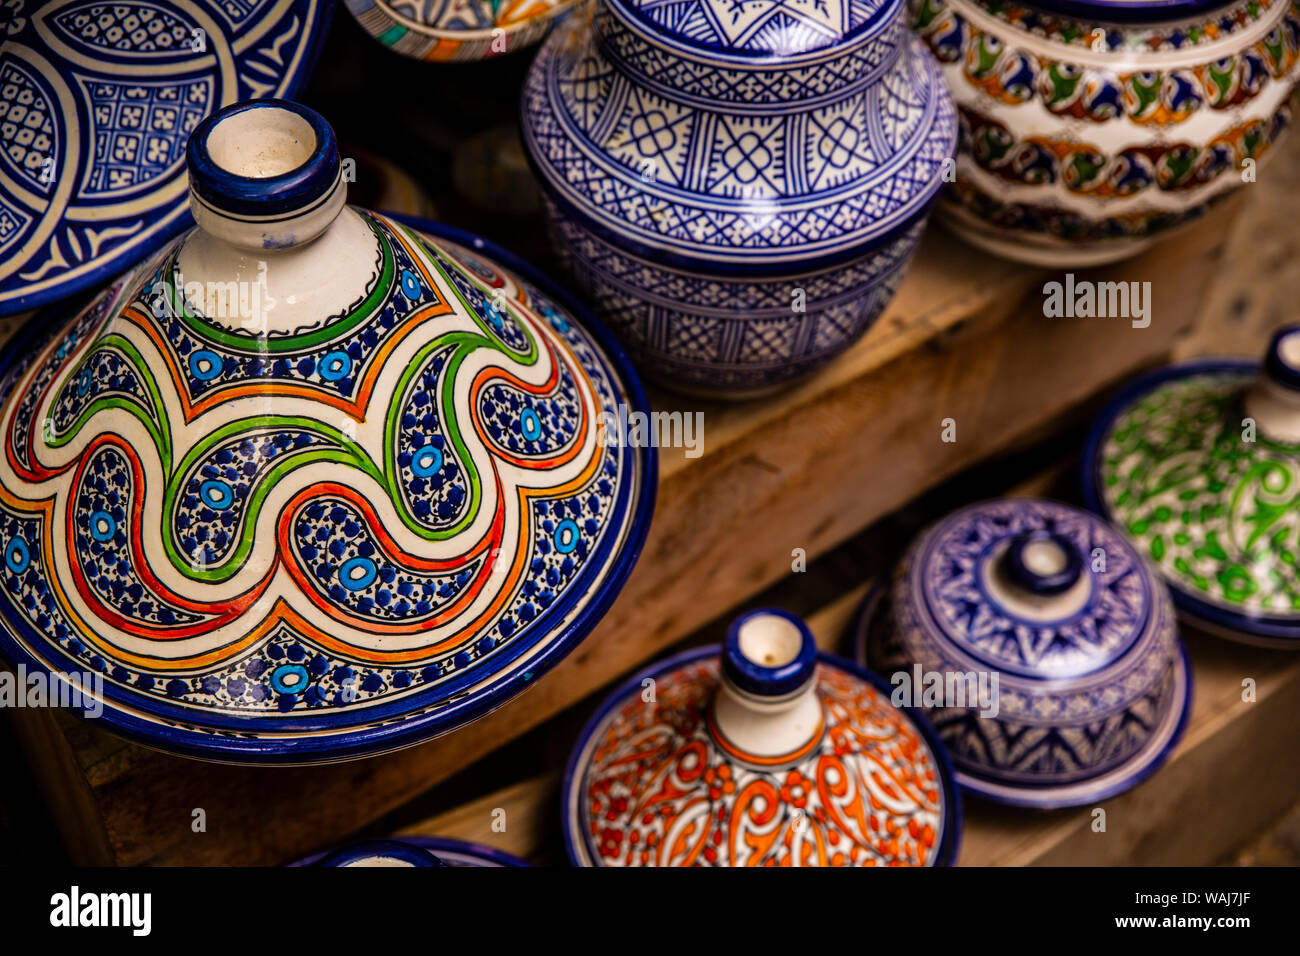 Fes, Maroc. La poterie colorée, tajines tajines Banque D'Images